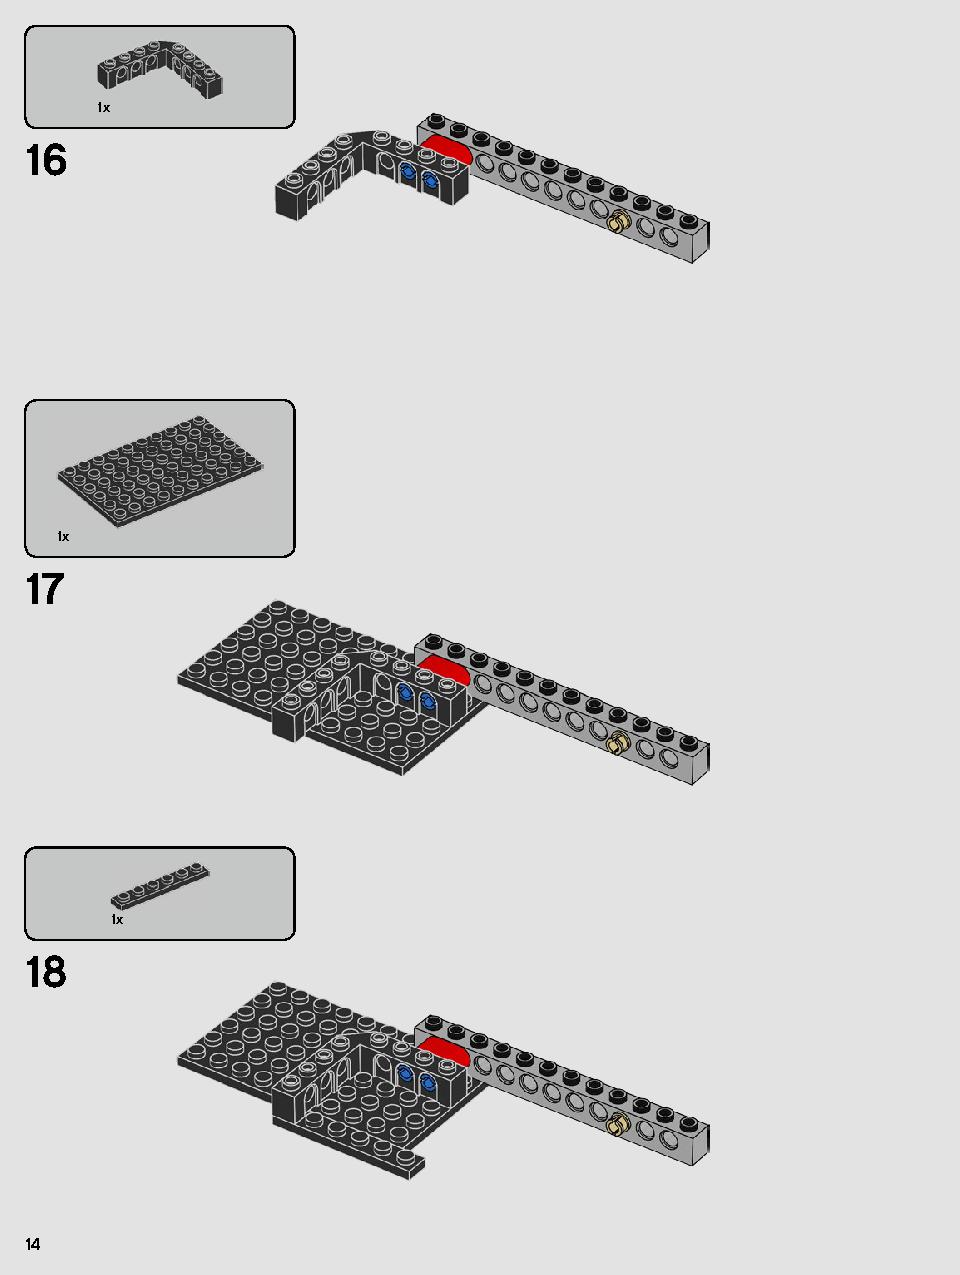 스타워즈 카일로 렌의 셔틀™ 75256 레고 세트 제품정보 레고 조립설명서 14 page